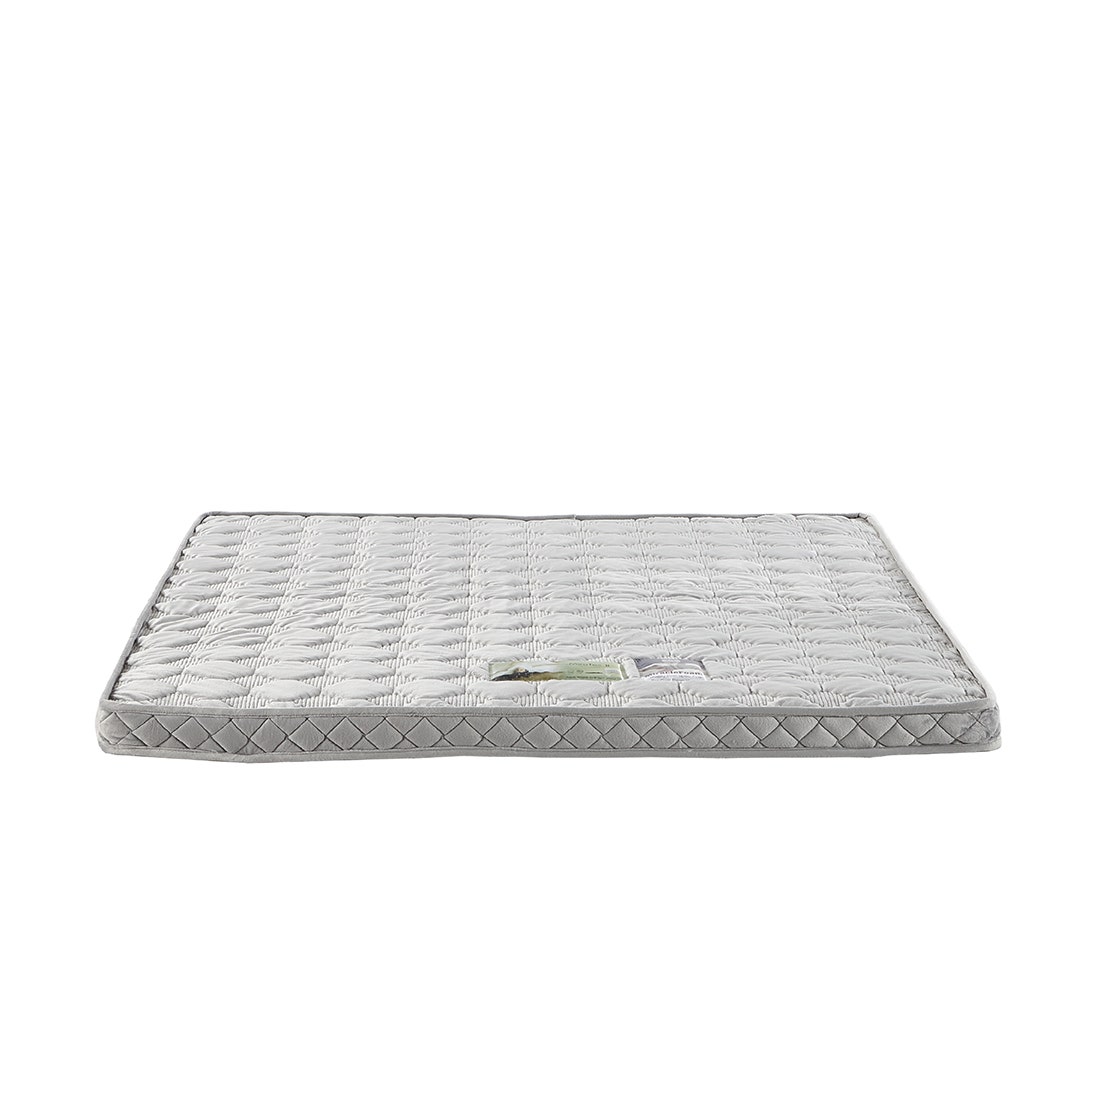 39006839-mattress-bedding-mattress-pads-protectors-mattress-pads-toppers-01